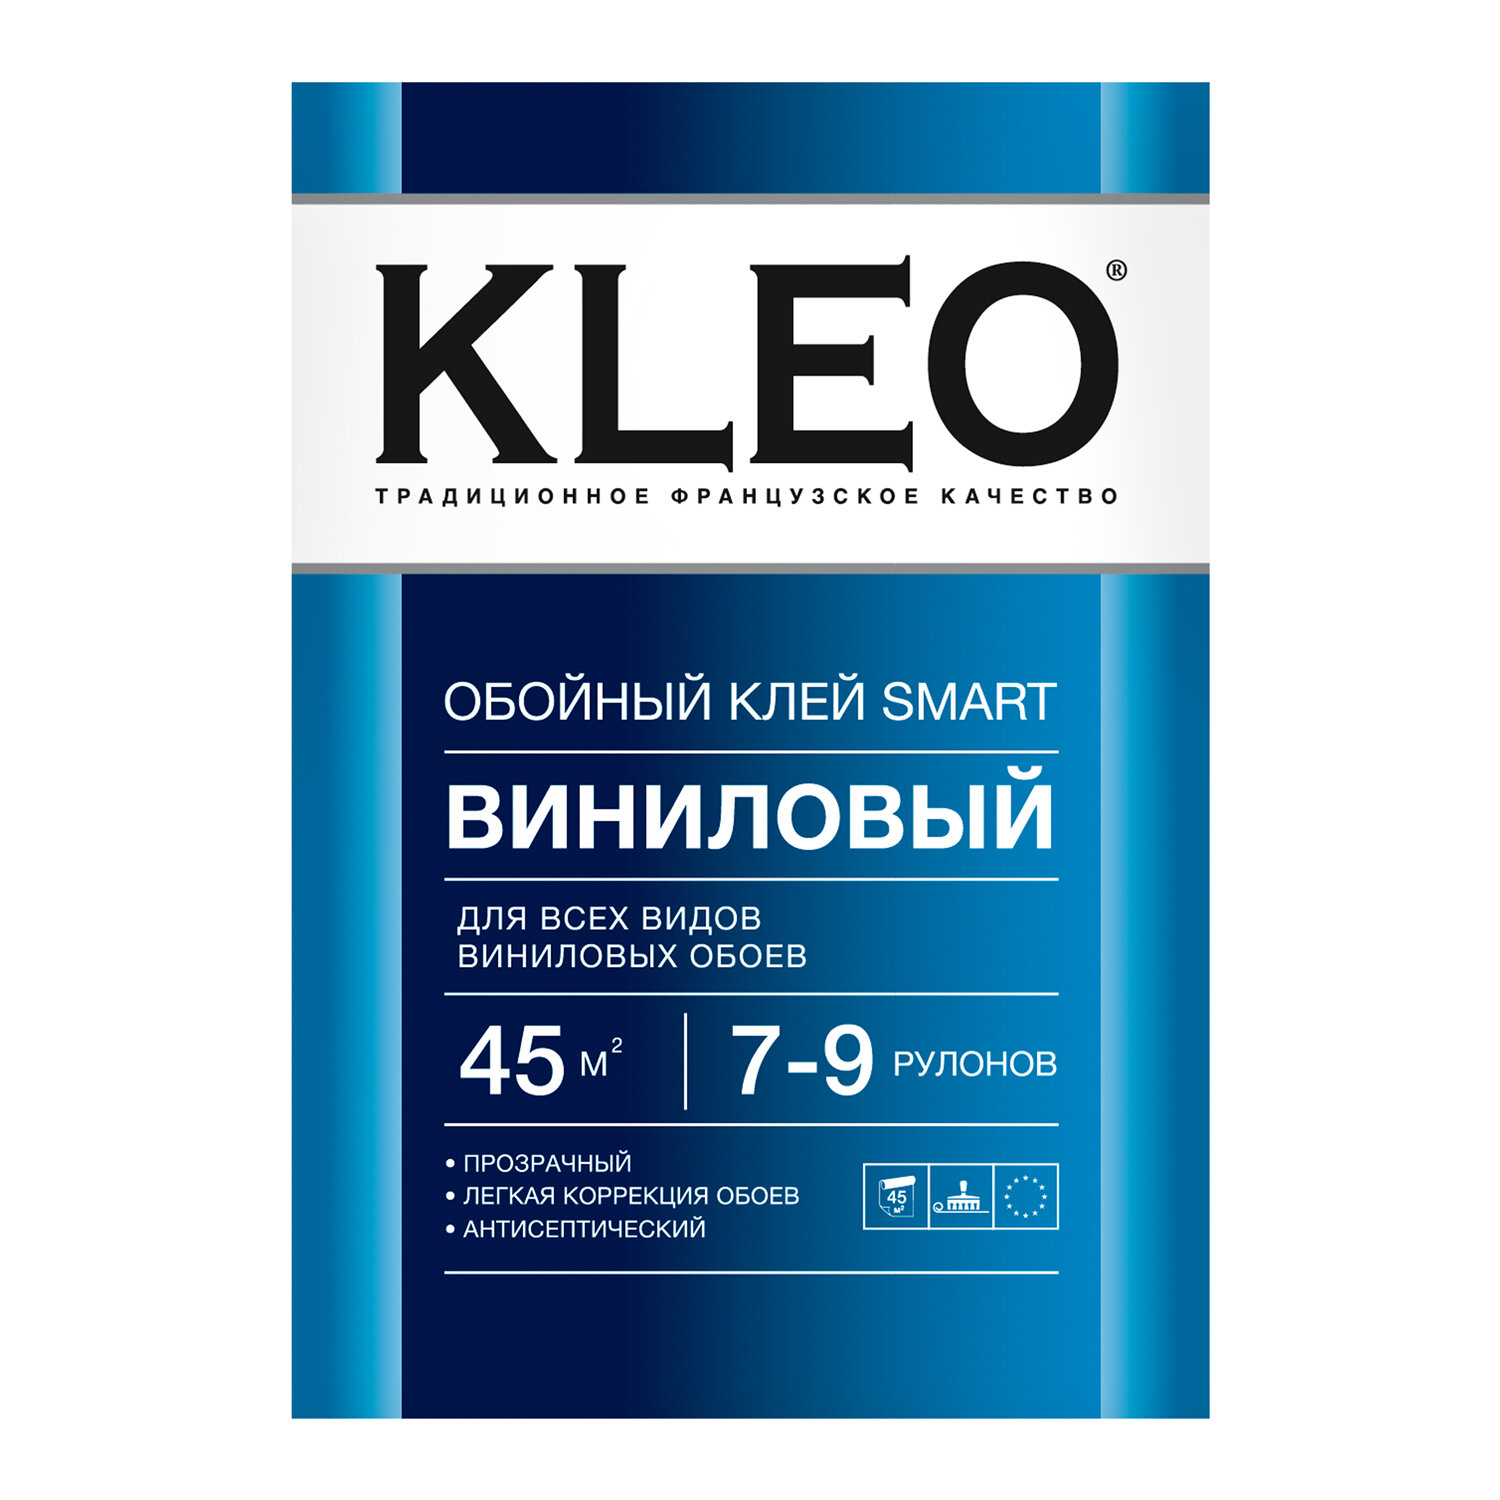 KLEO SMART 7-9, виниловый обойный клей , 200г